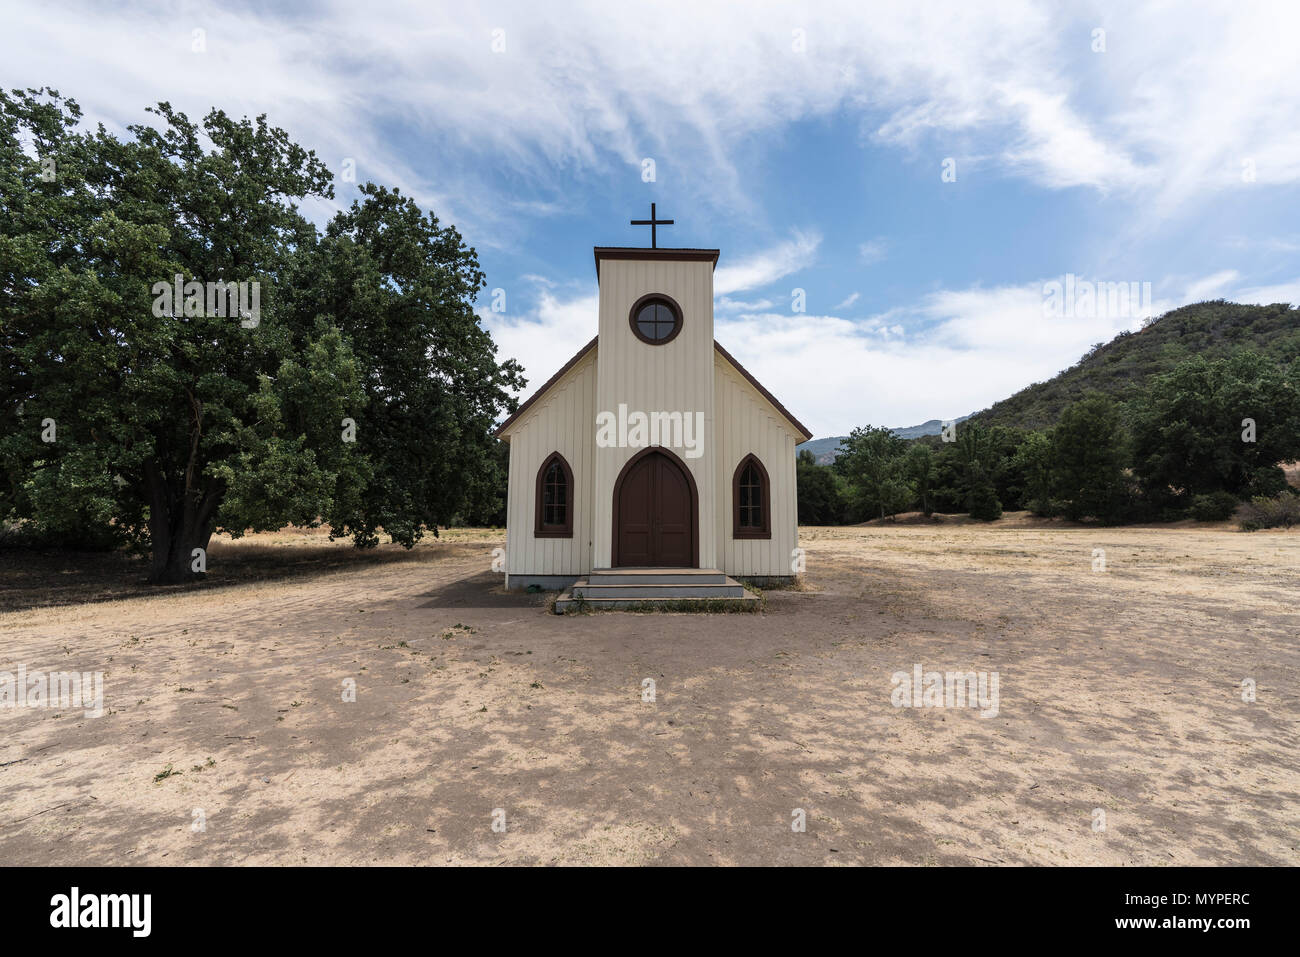 Kleine historische Film Kirche durch die US National Park Service in den Santa Monica Mountains National Recreation Area in der Nähe von Los Angeles Kalifornien gehört. Stockfoto